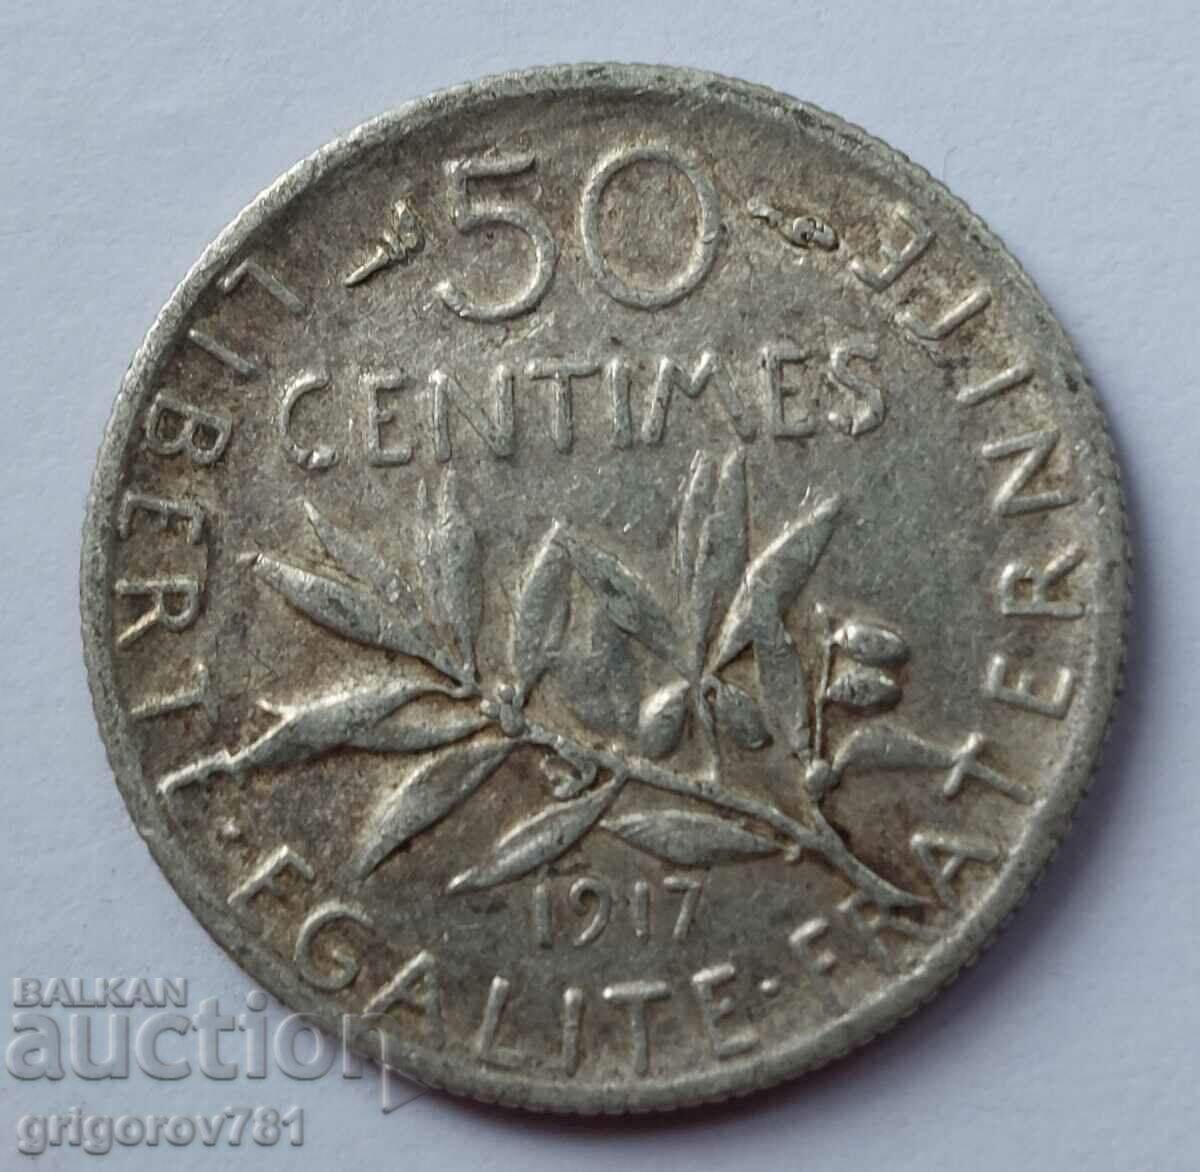 Ασημένιο 50 εκατοστά Γαλλία 1917 - ασημένιο νόμισμα №37